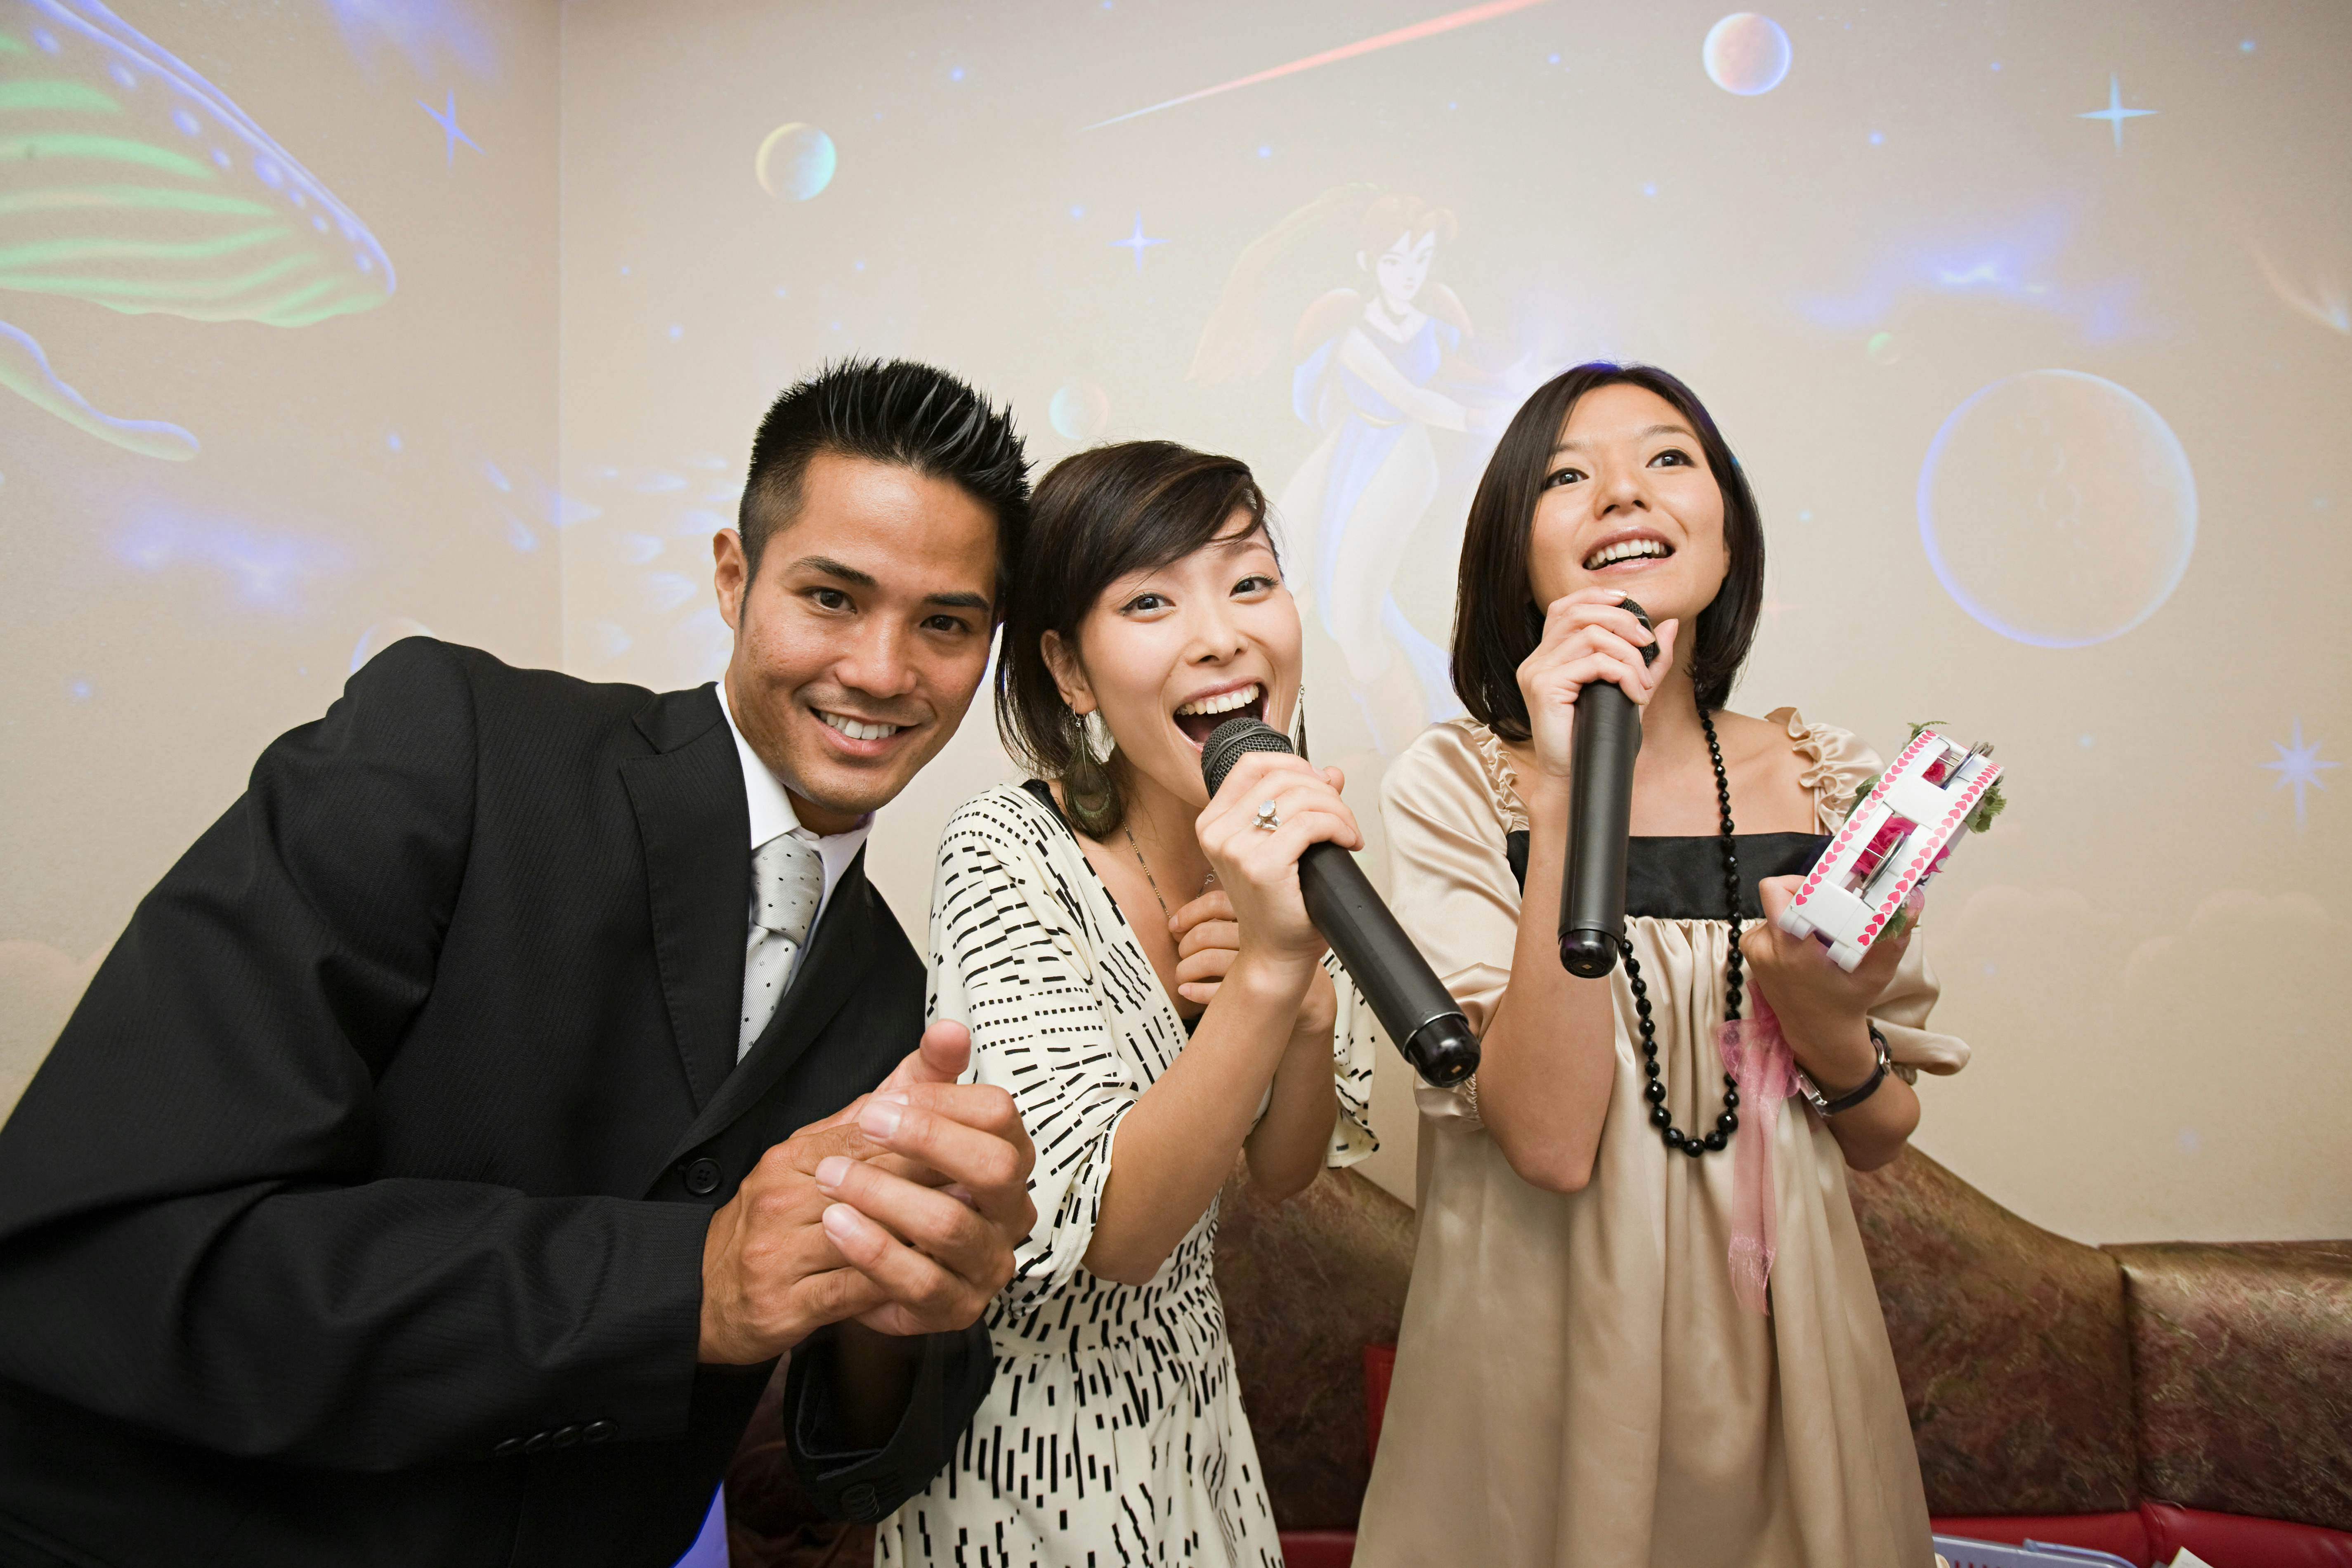 Cheap Karaoke in Tokyo